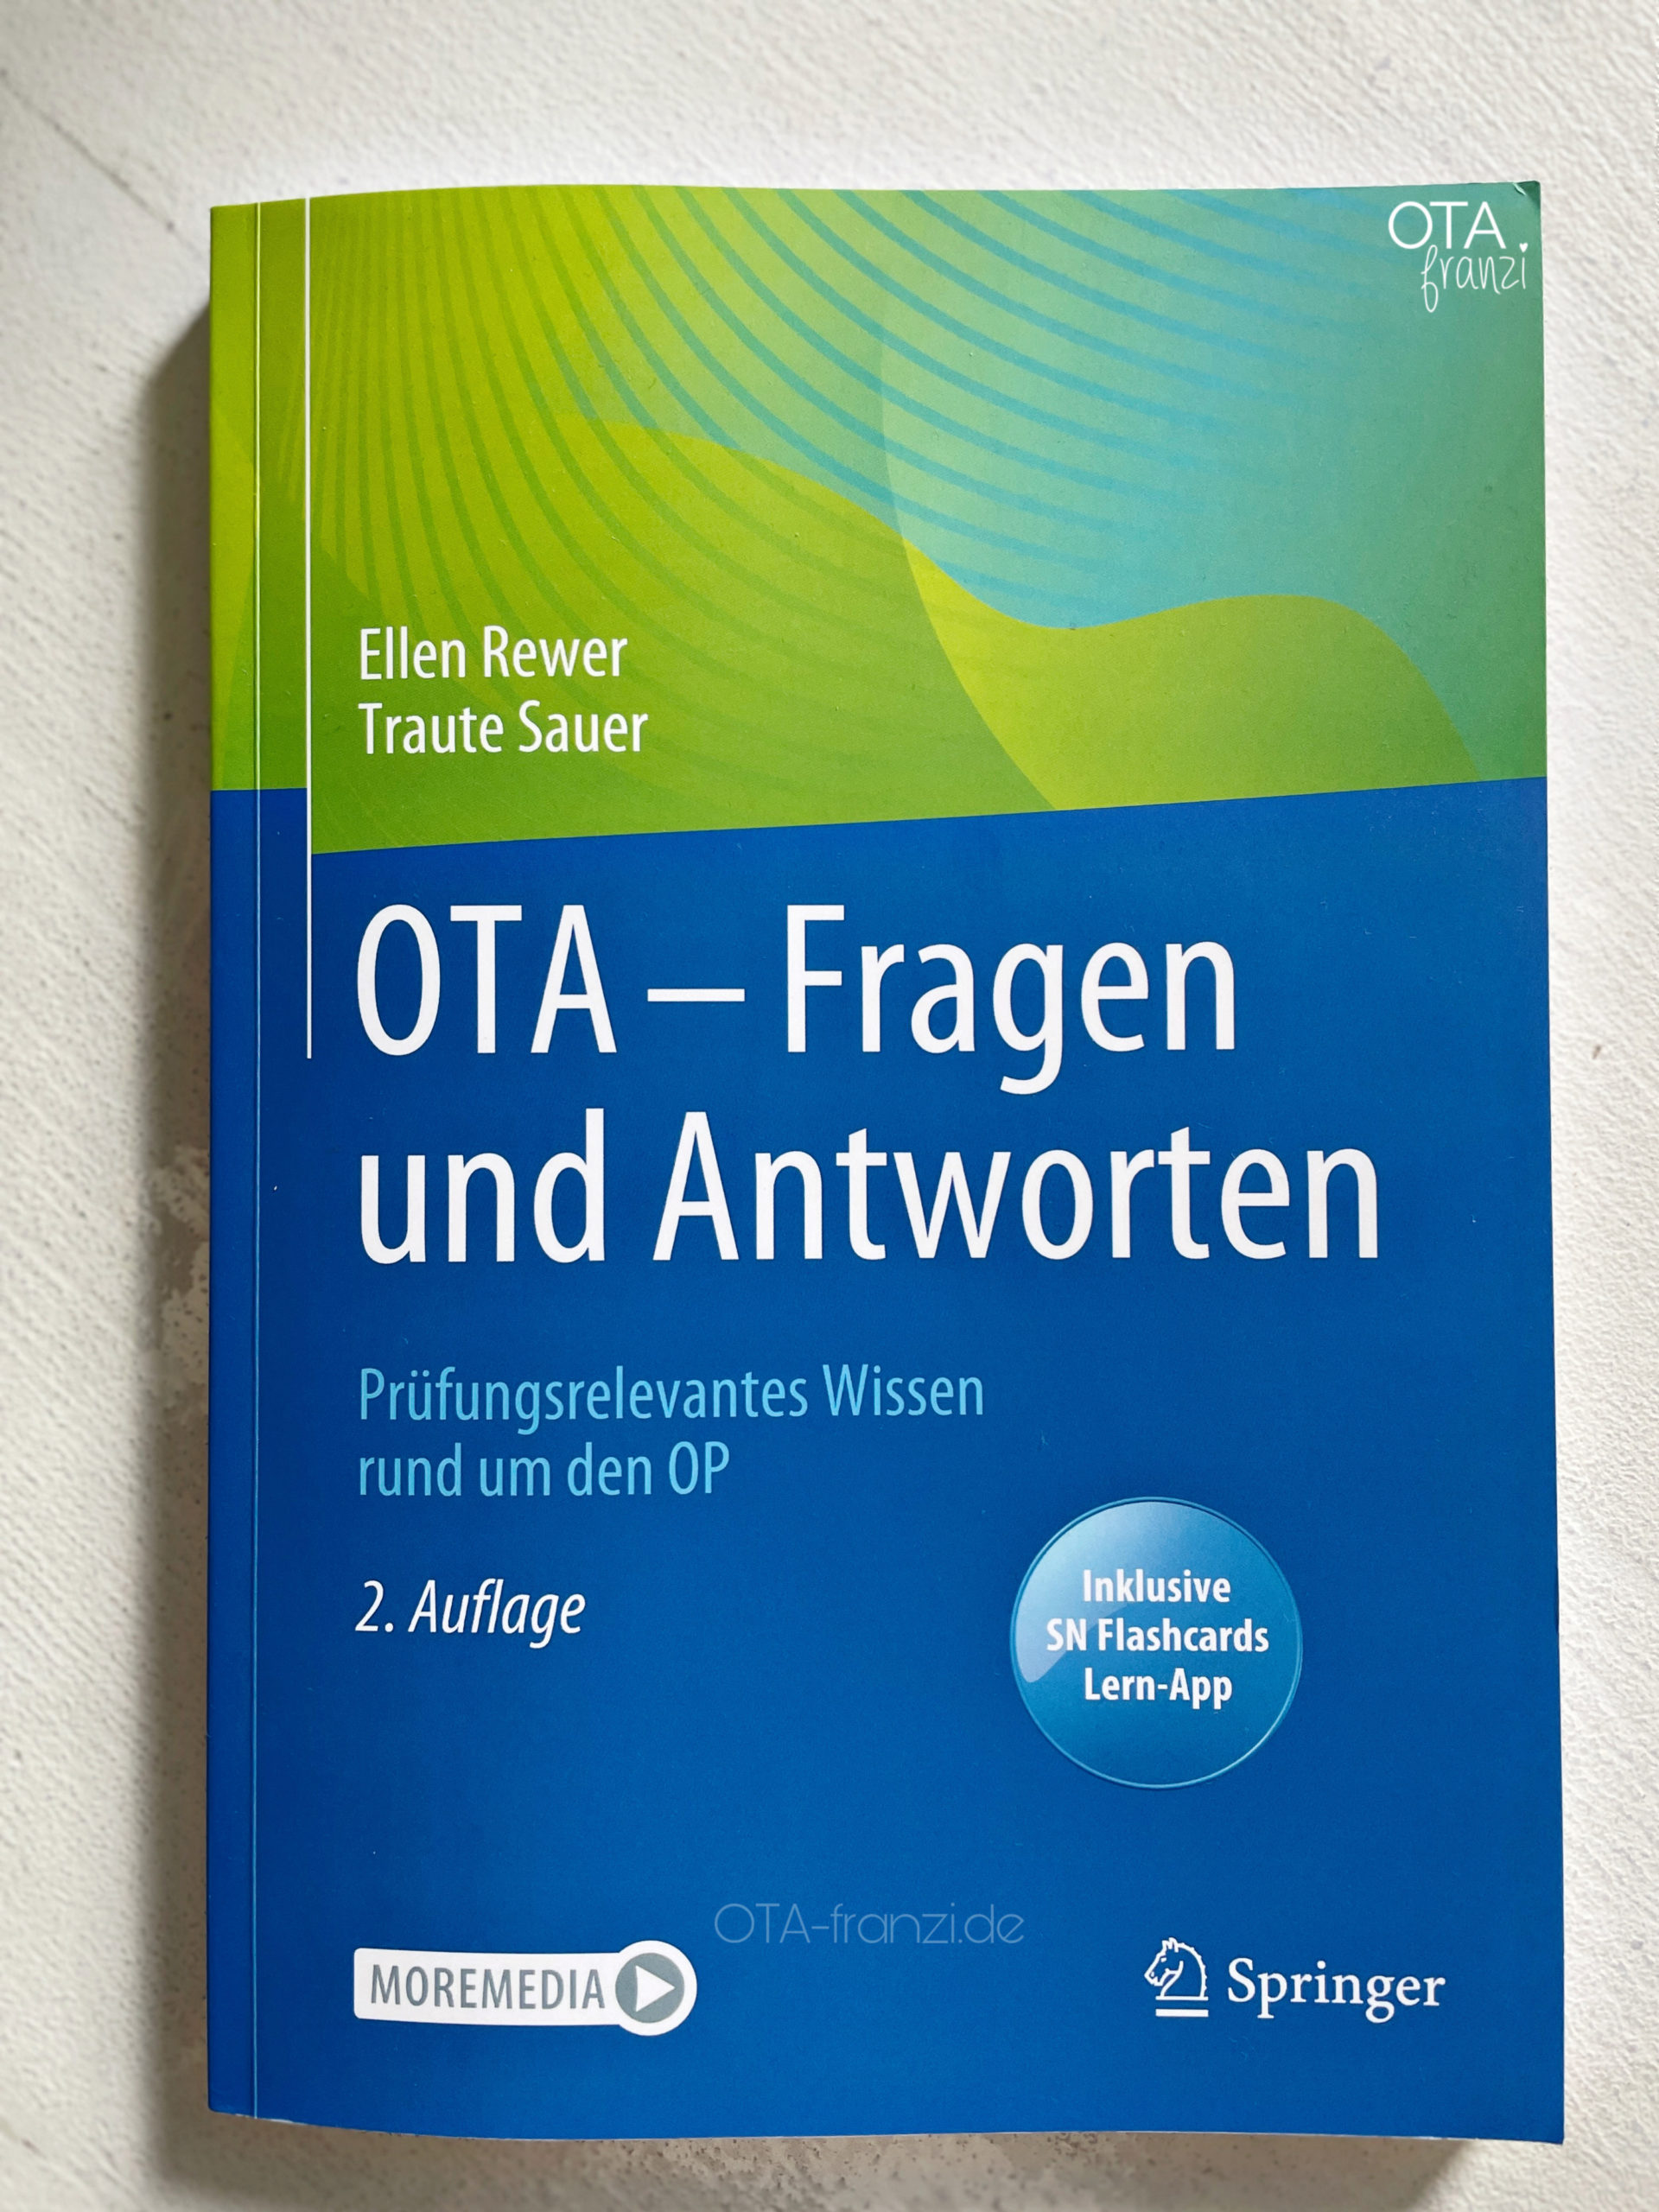 OTA - fragen und antworten. OTA-franzi.de